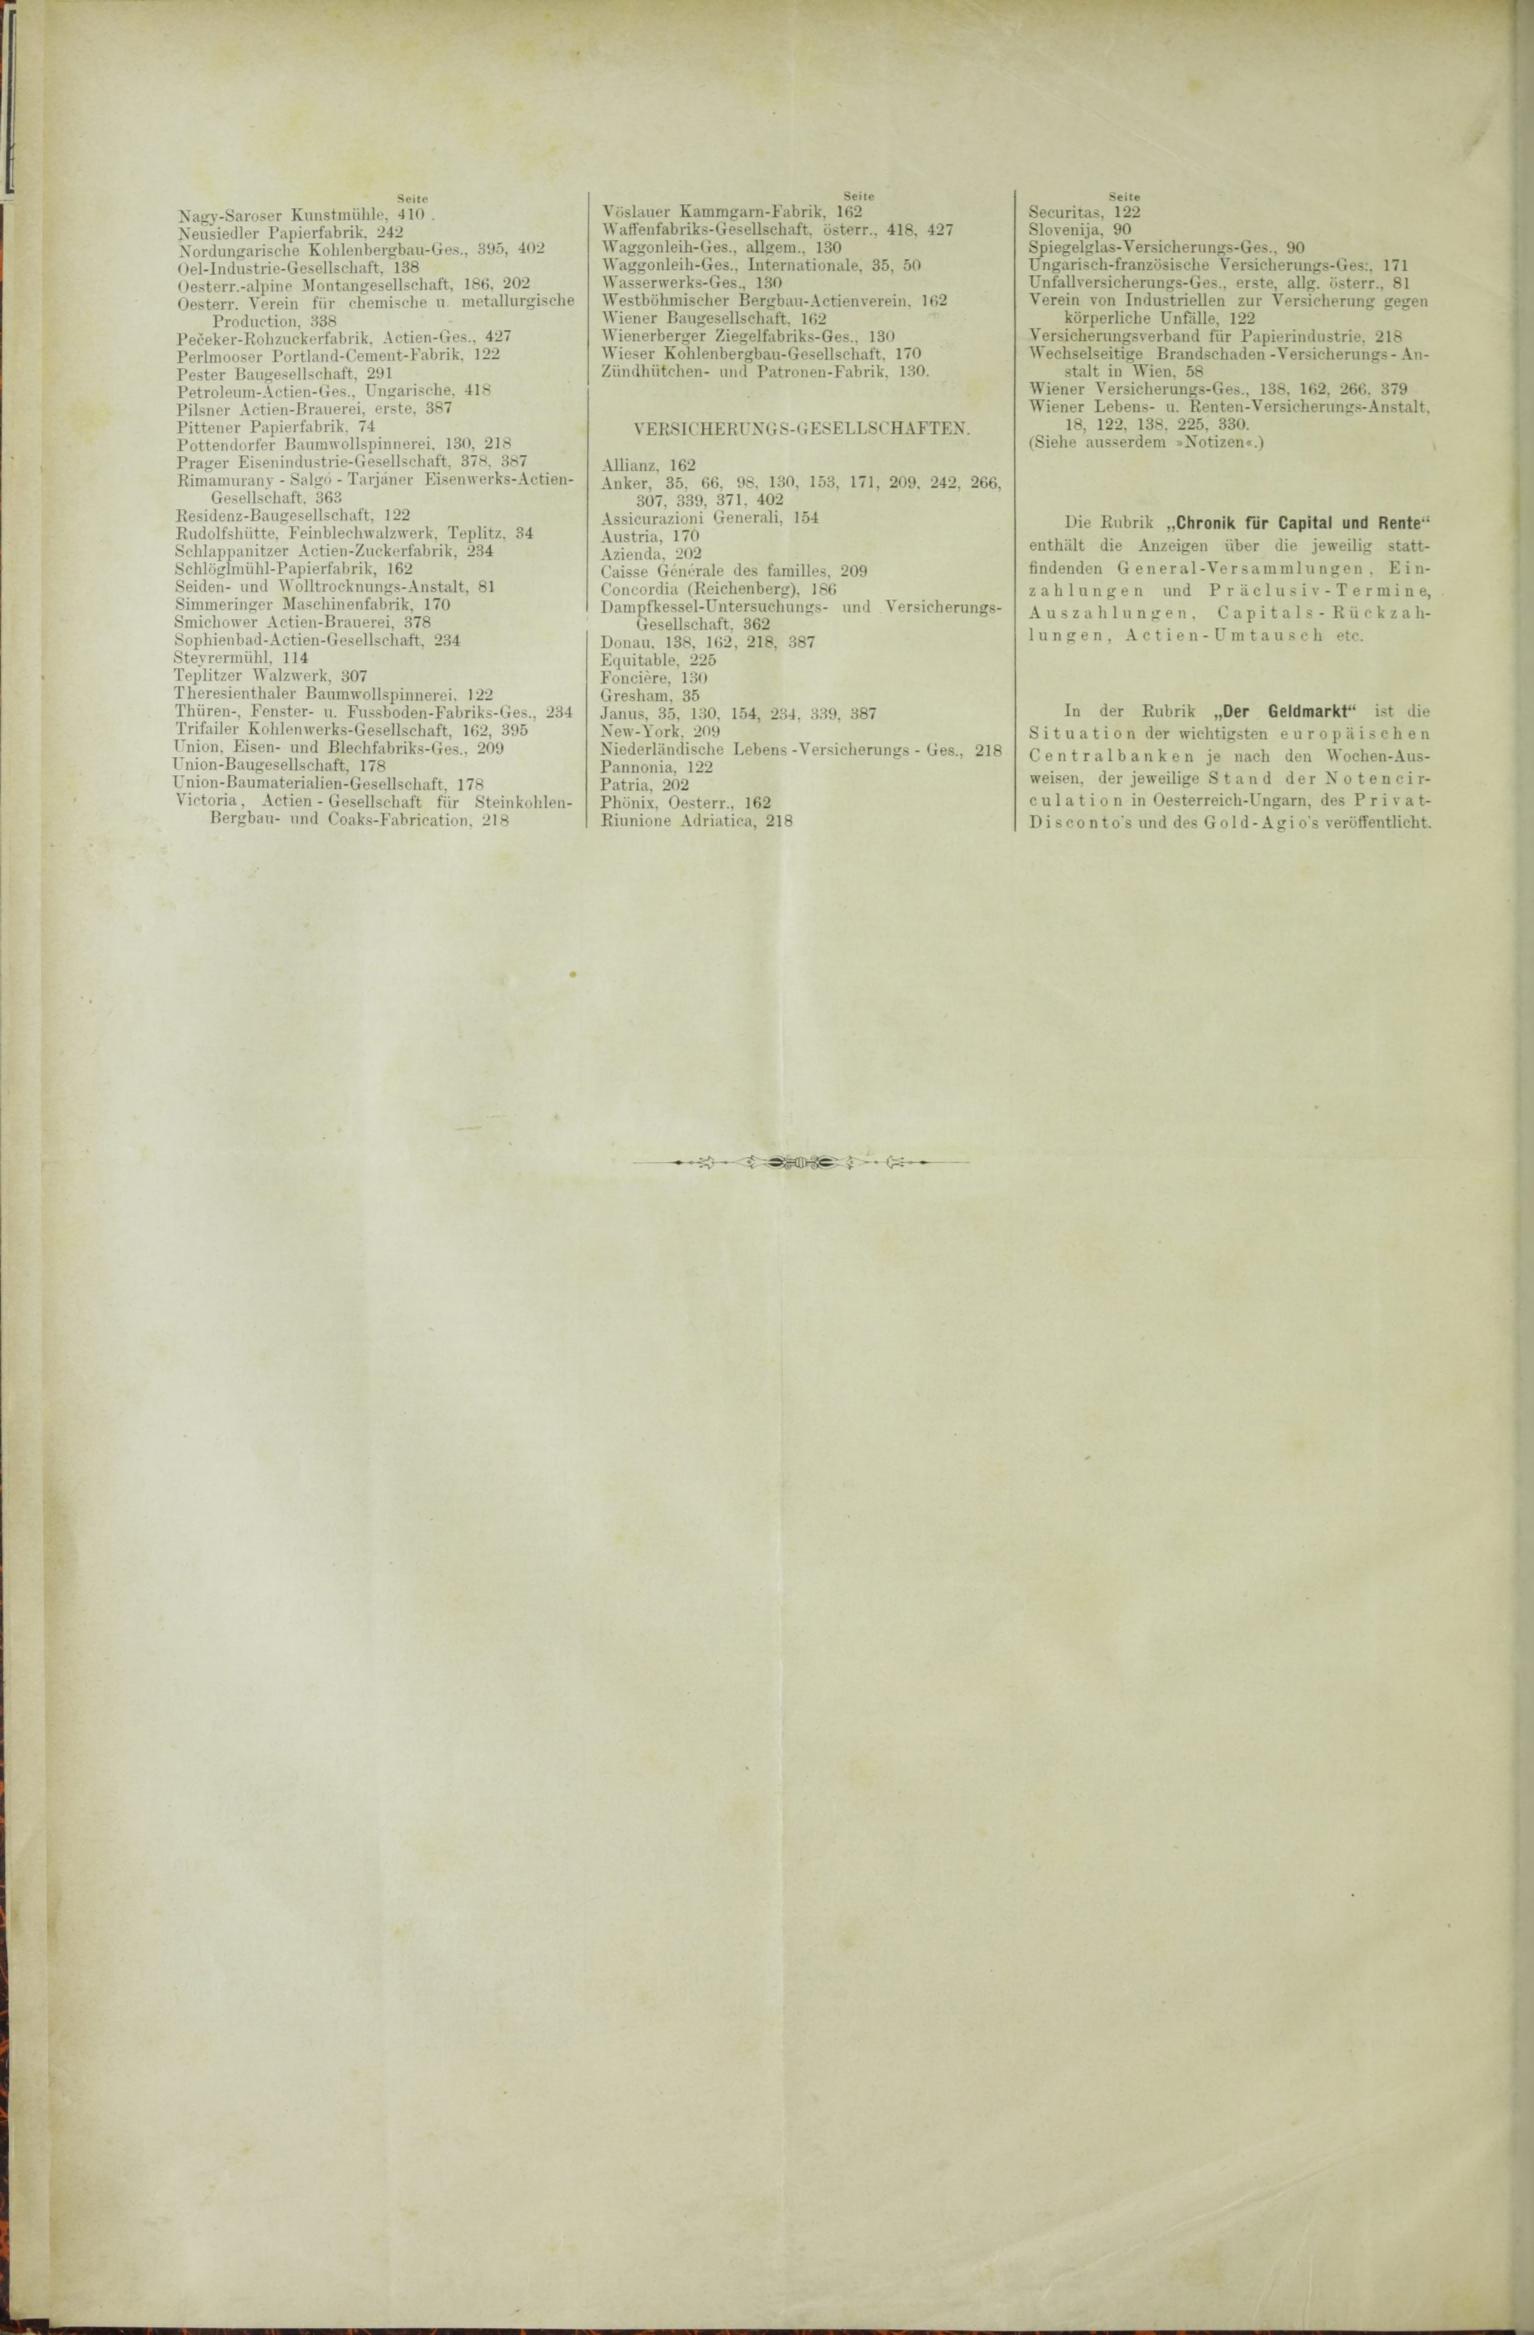 Der Tresor 23.04.1885 - Seite 12